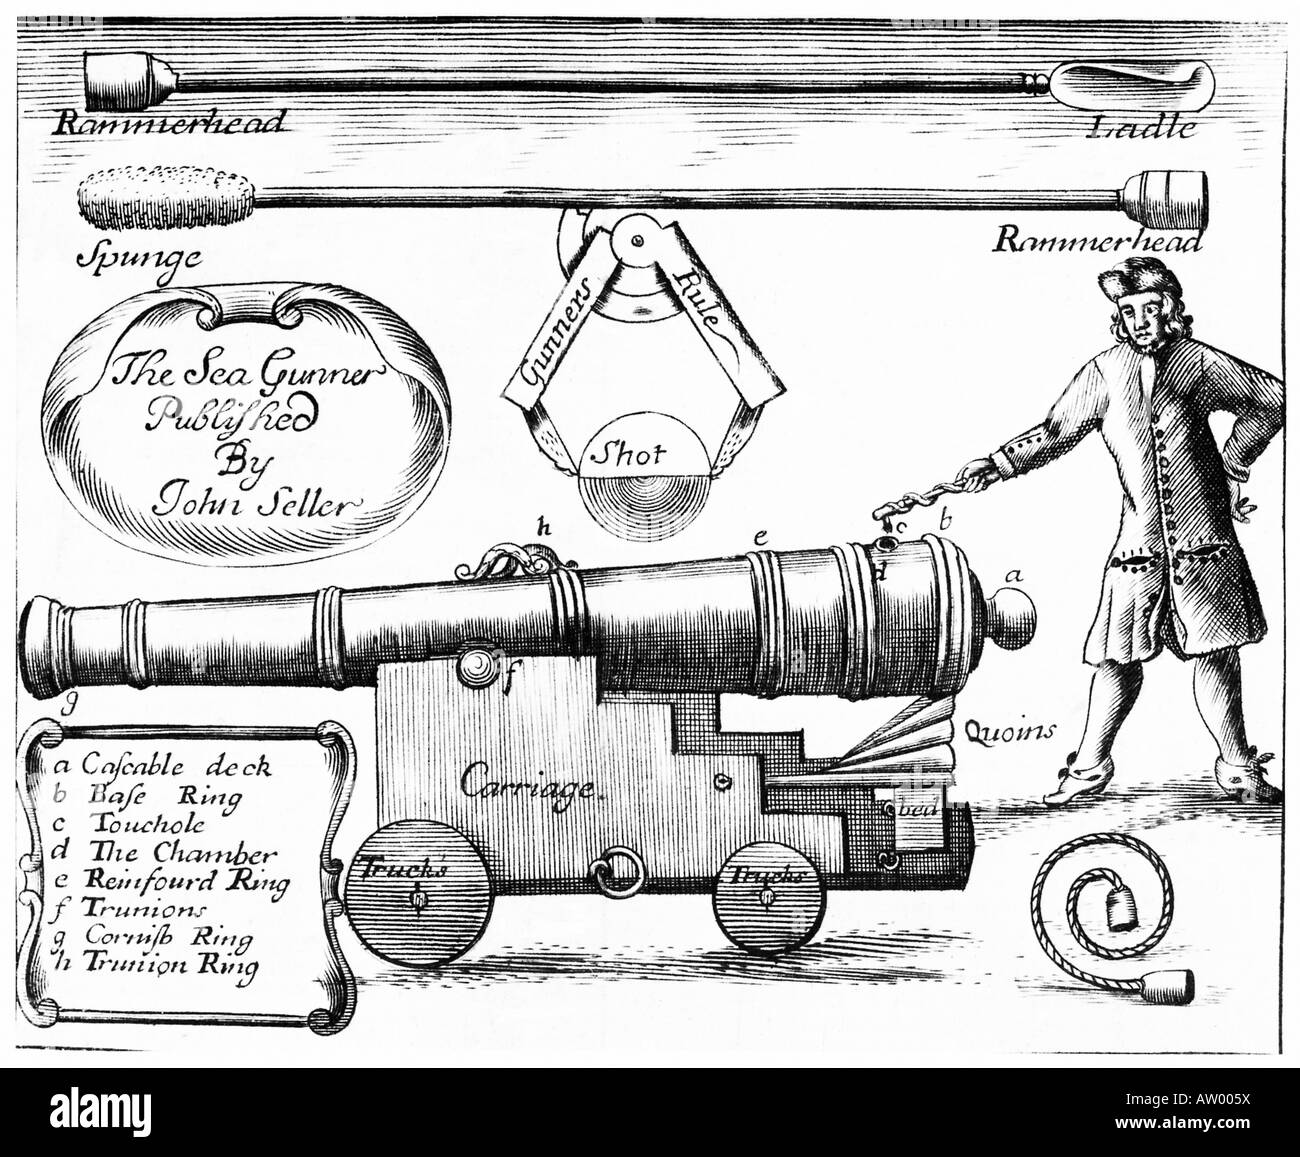 Marinekanone 1691 Gravur des Seegewehrs von John Seller von einer typischen Marinekanone und ihrer Ausrüstung Stockfoto